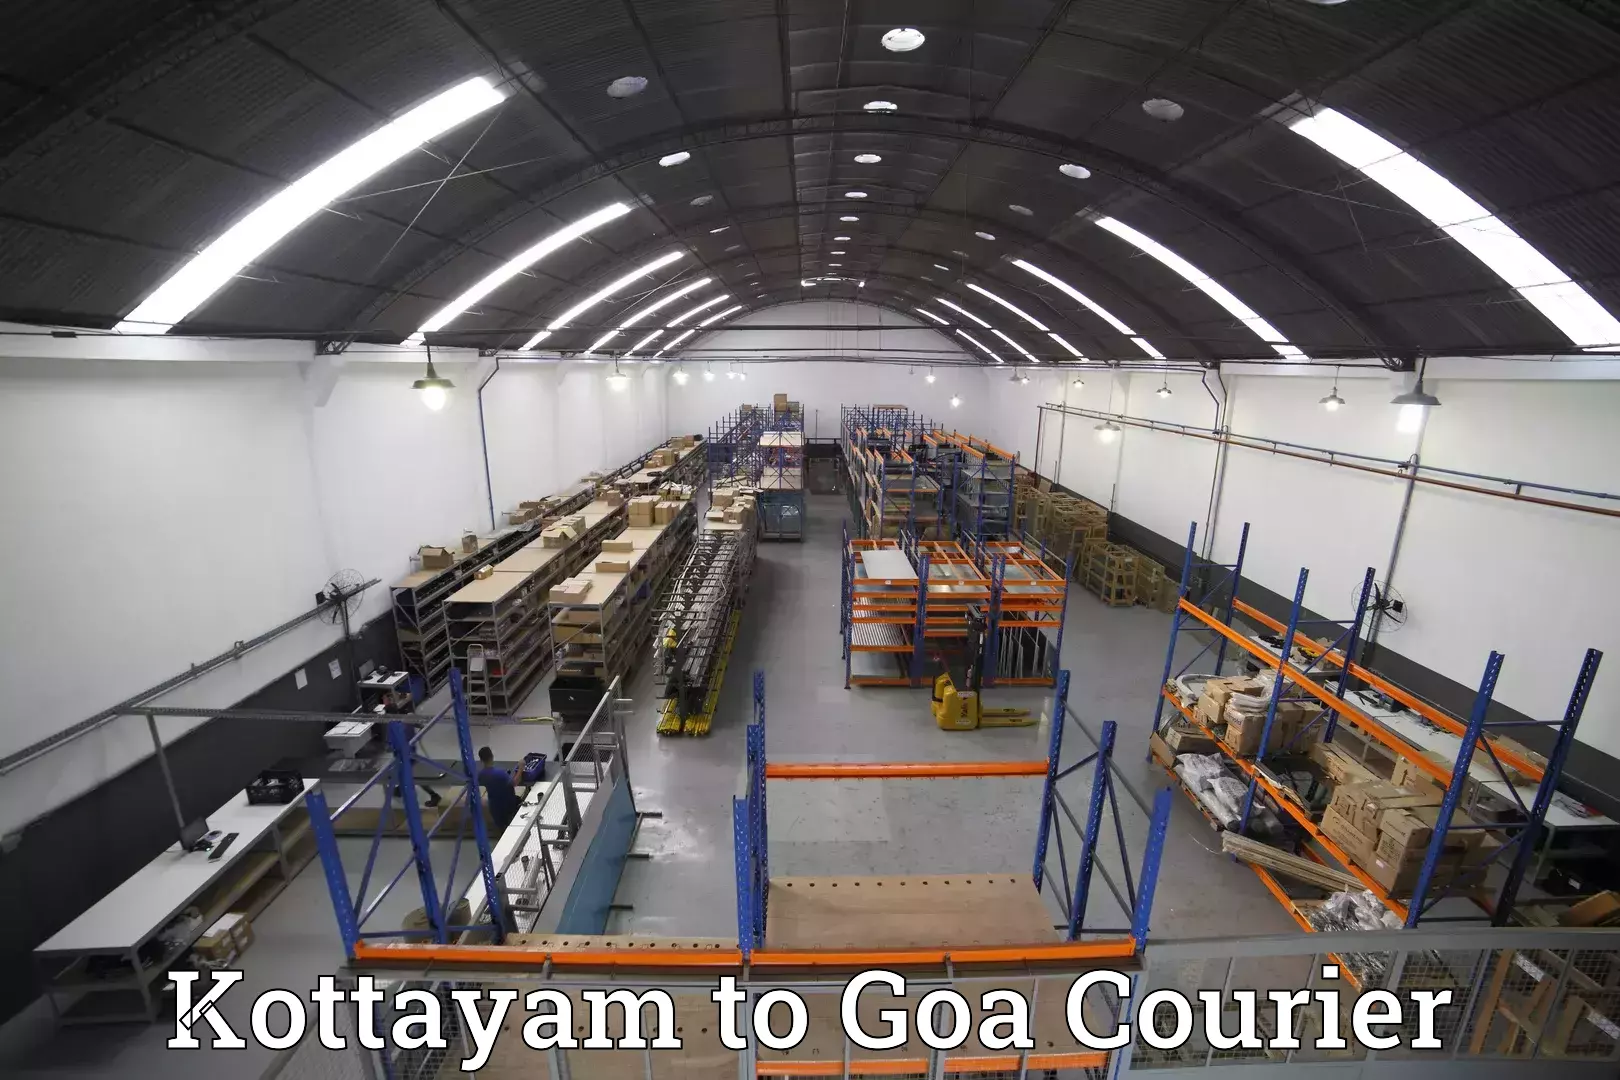 Luggage shipment tracking Kottayam to IIT Goa